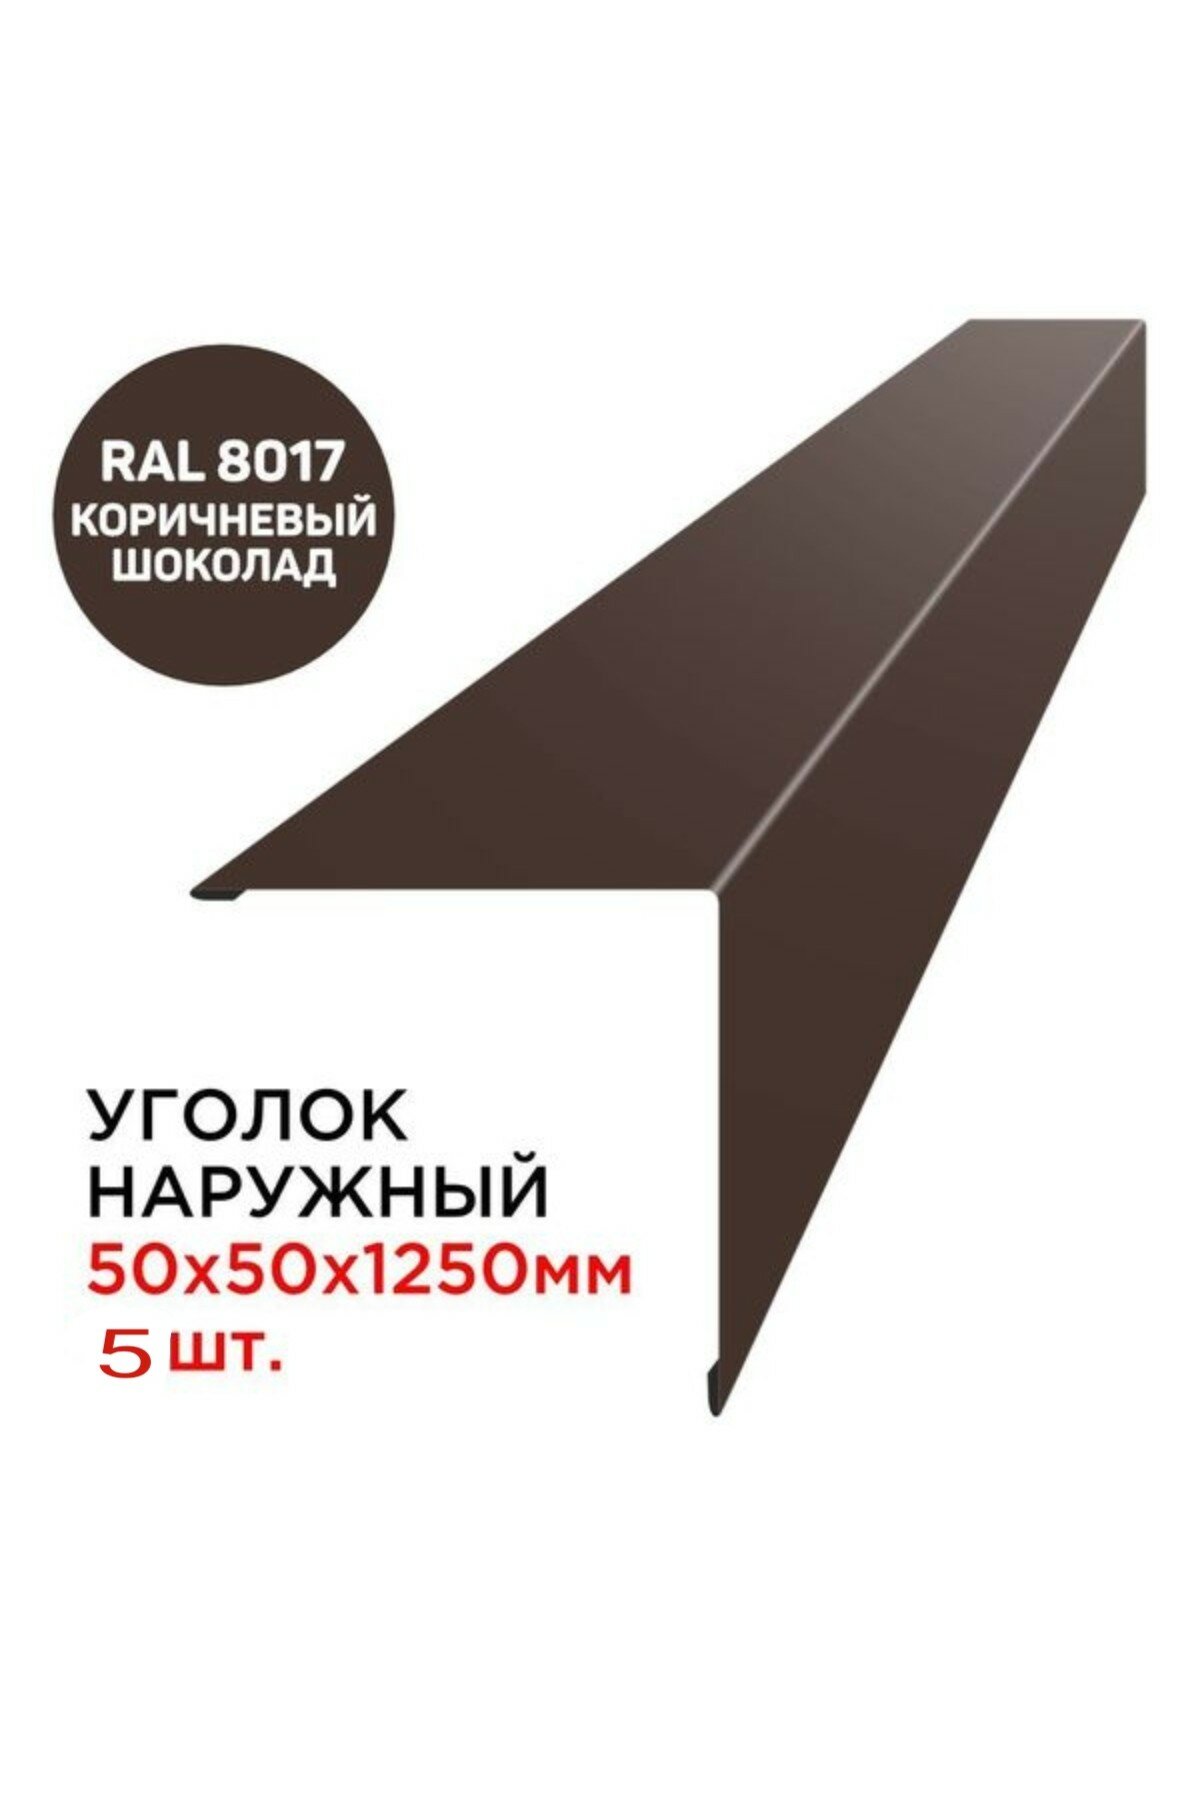 Уголок наружный / внешний металлический 50х50мм длина 1.25м цвет RAL 8017 коричневый шоколад - 5 шт